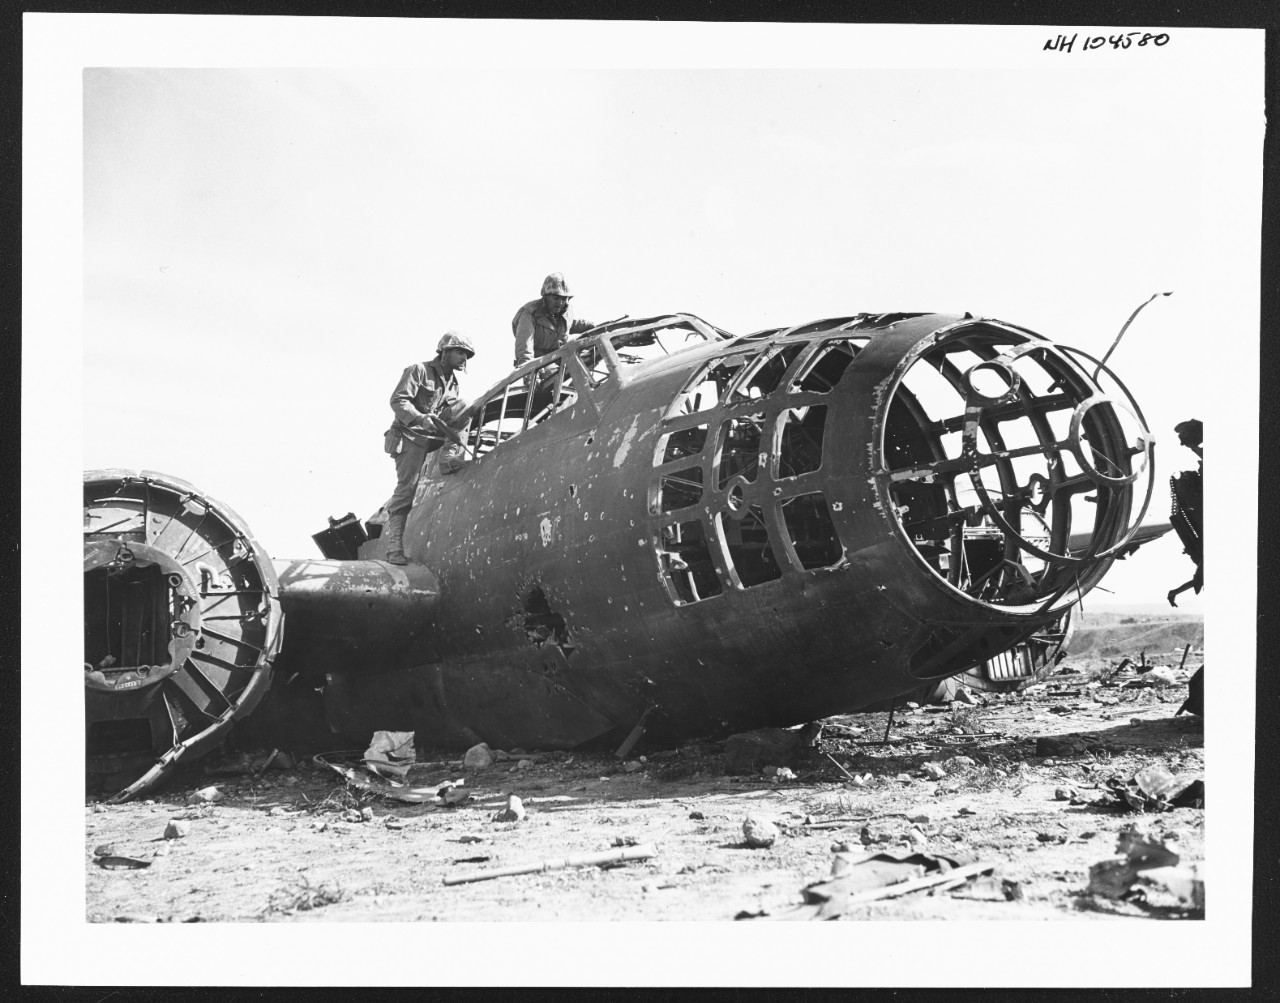 Photo #: NH 104580  Iwo Jima Operation, February-March 1945